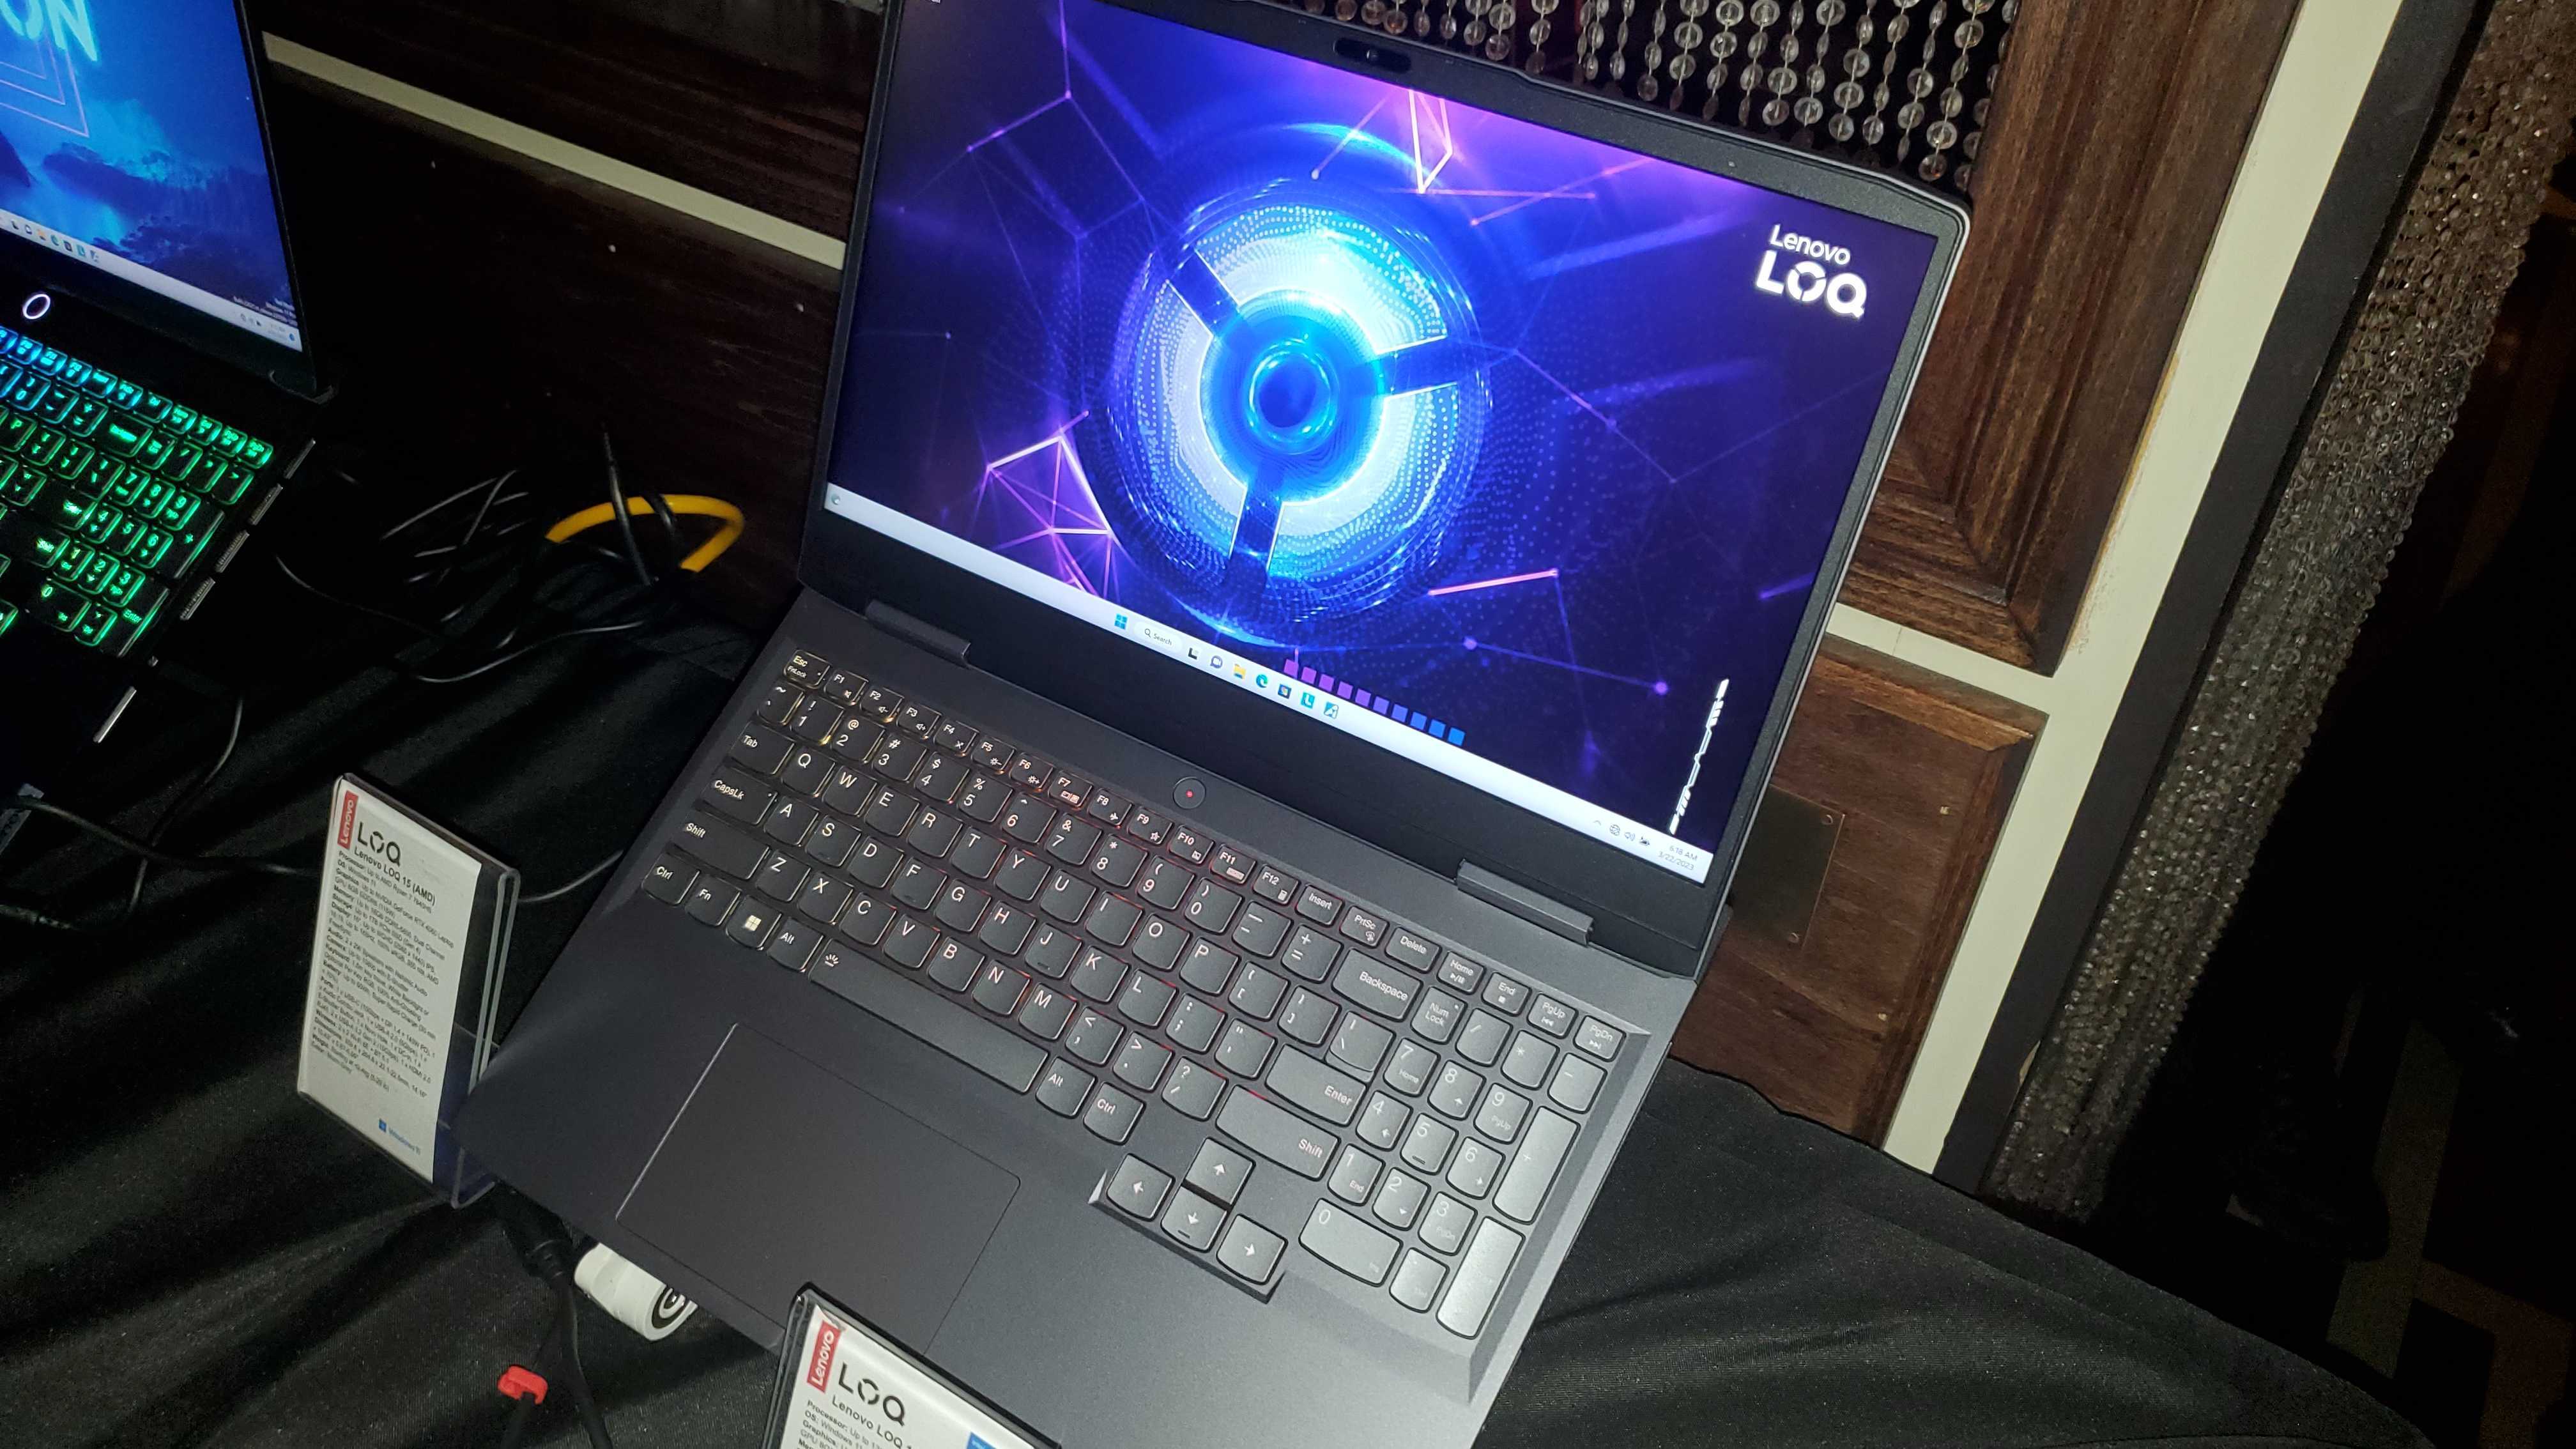 dark laptop with RGB lighting, display showing logo